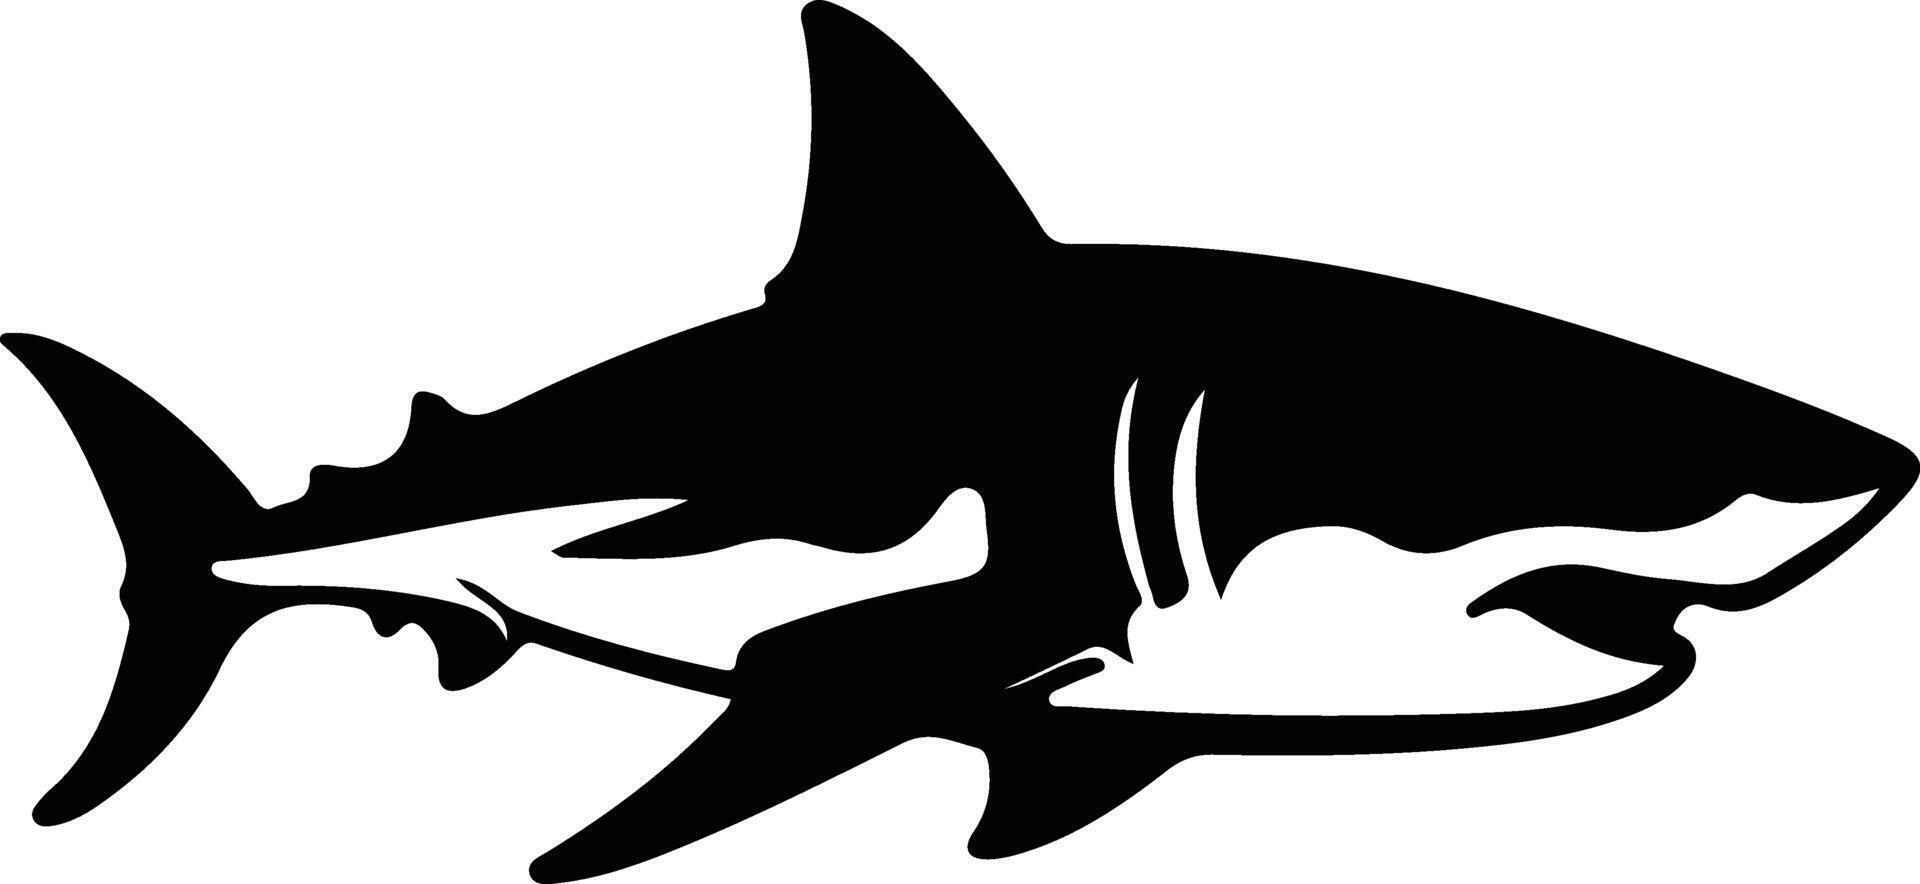 grande bianca squalo nero silhouette vettore